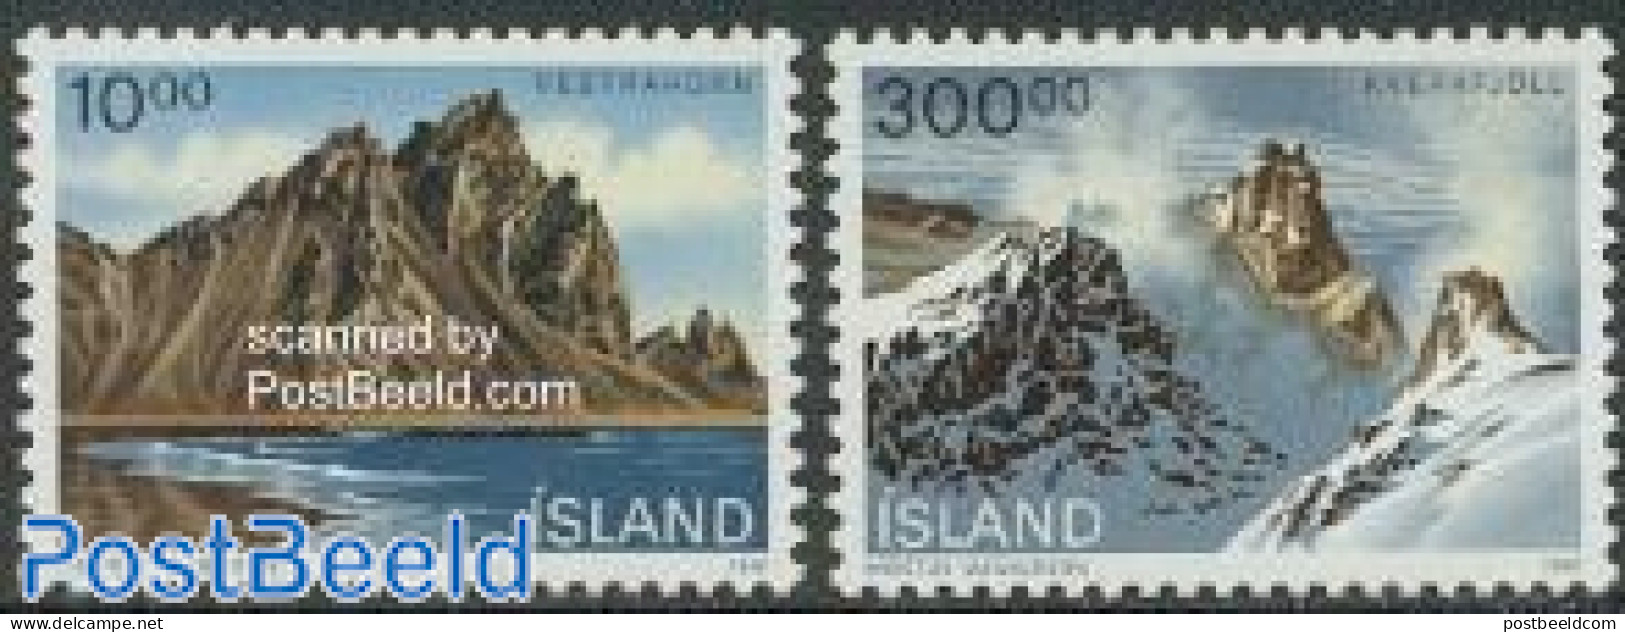 Iceland 1991 Landscapes 2v, Mint NH - Unused Stamps